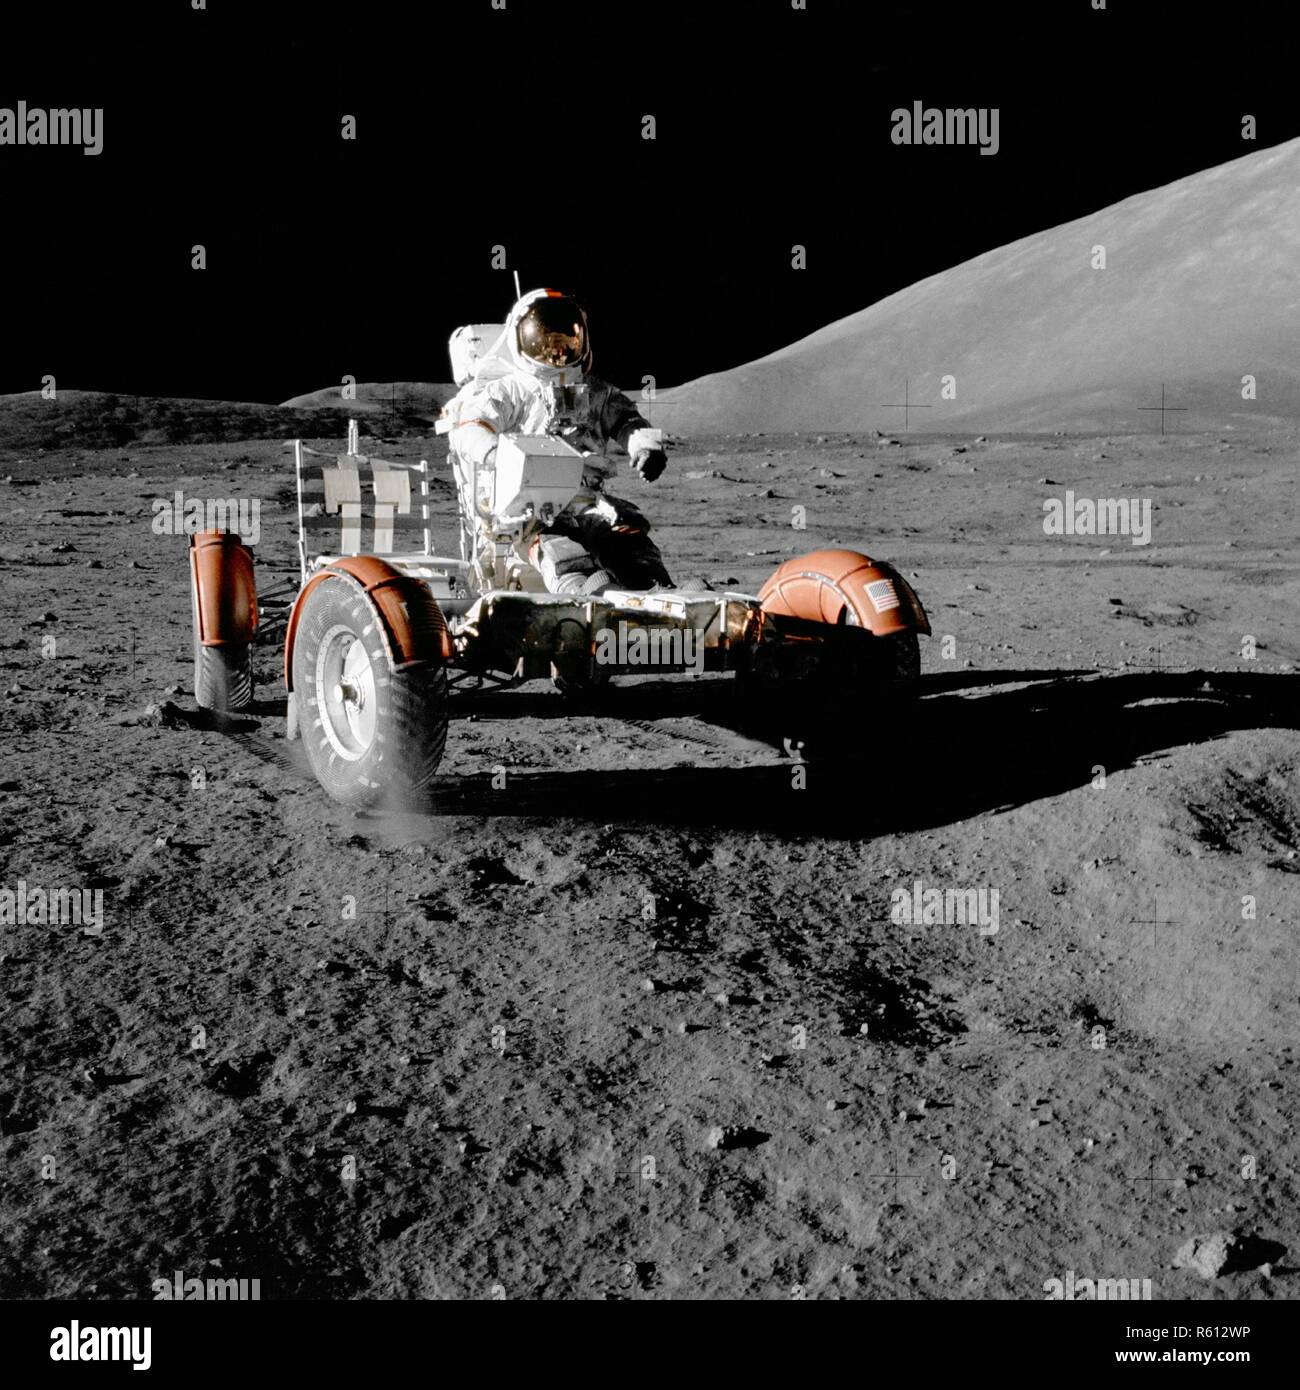 Apollo 17 Of The Lunar Rover, nasa.jpg - R612WP Stock Photo